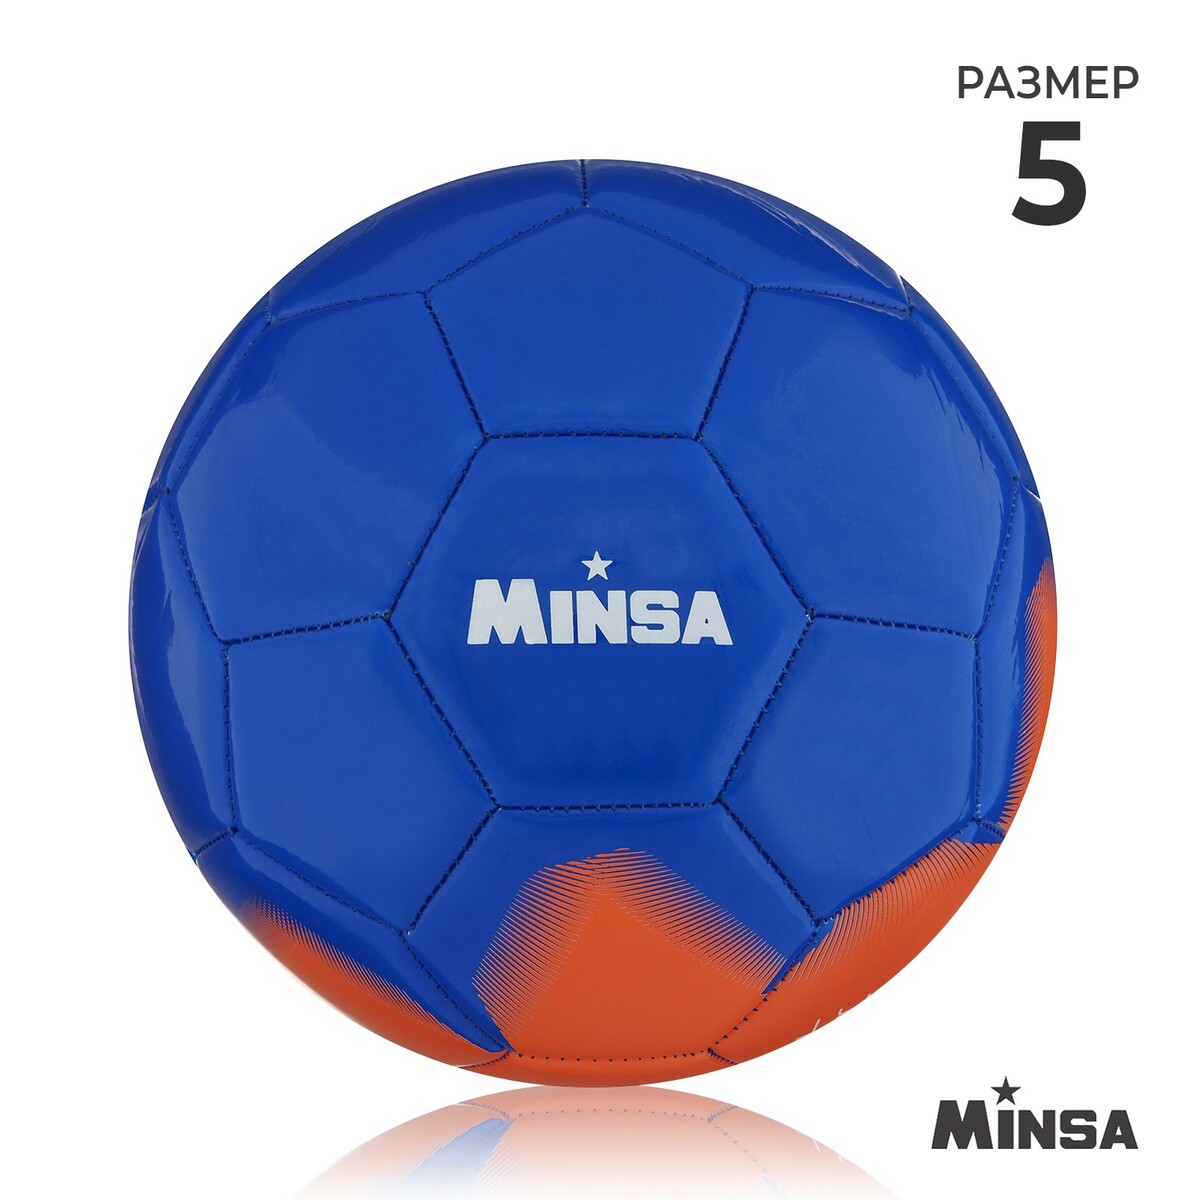 Мяч футбольный minsa, pu, машинная сшивка, 32 панели, р. 5 мяч футзальный torres futsal resist pu полугибридная сшивка 24 панели р 4